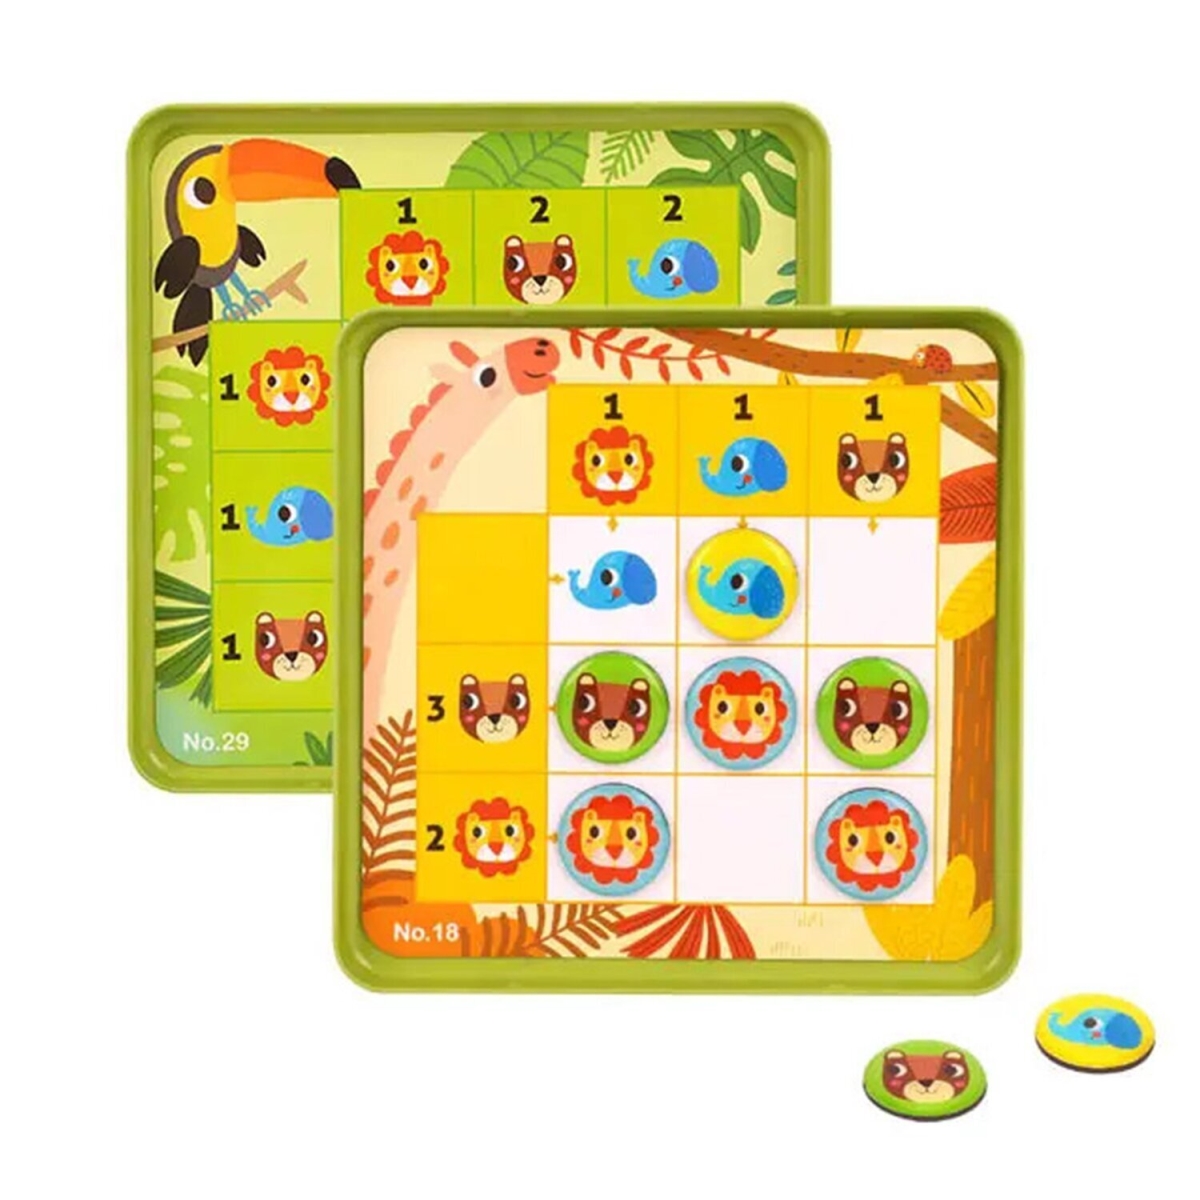 300223 18 x 18 x 2 cm Forest Sudoku -  Tooky Toy